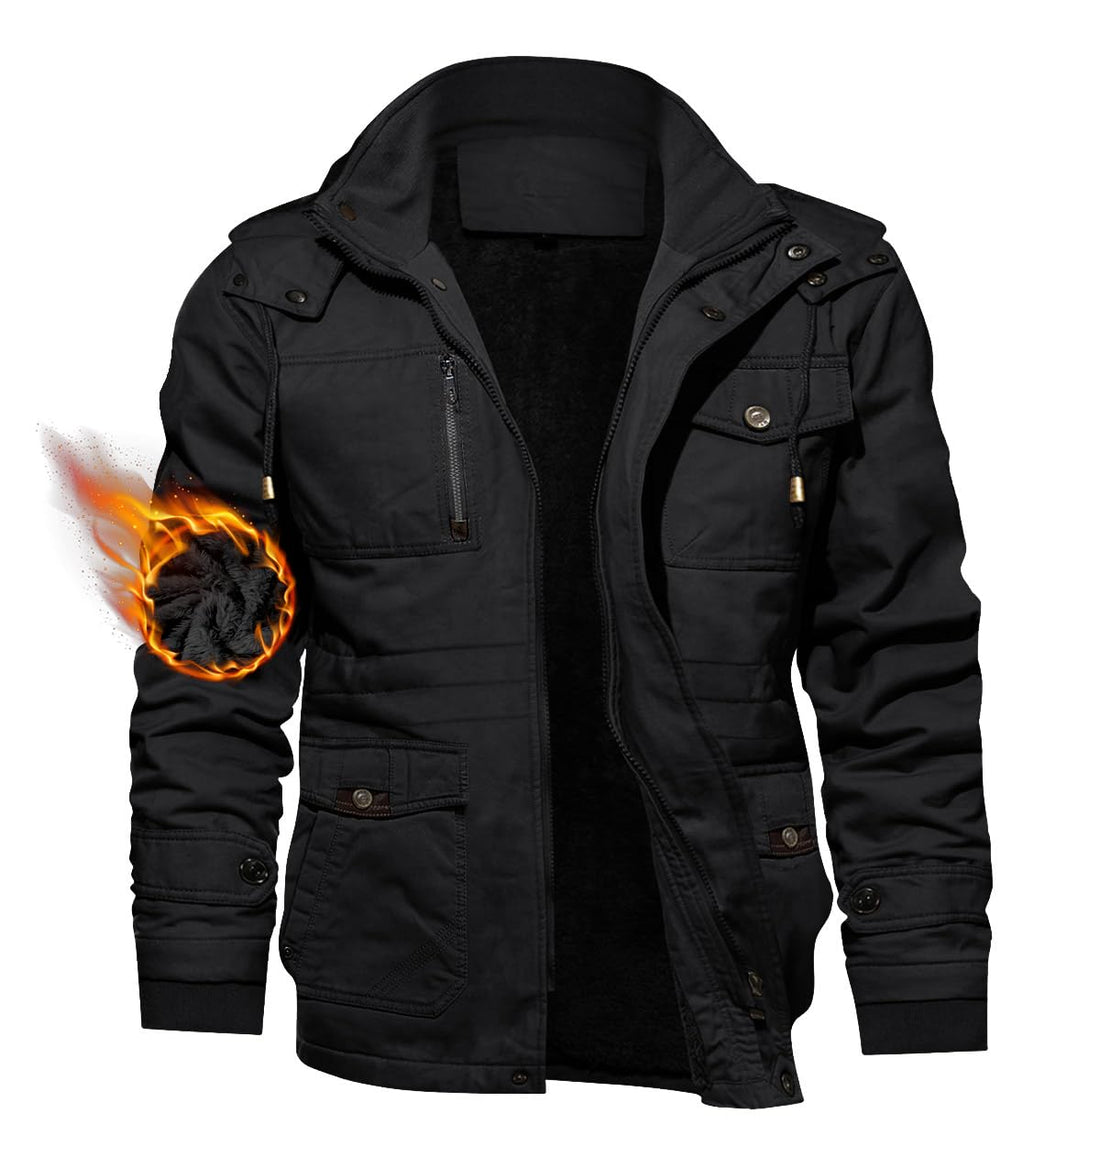 TACVASEN Men's Hooded Military Tactical Jacket Windbreak Fleece Coat Black, US XL